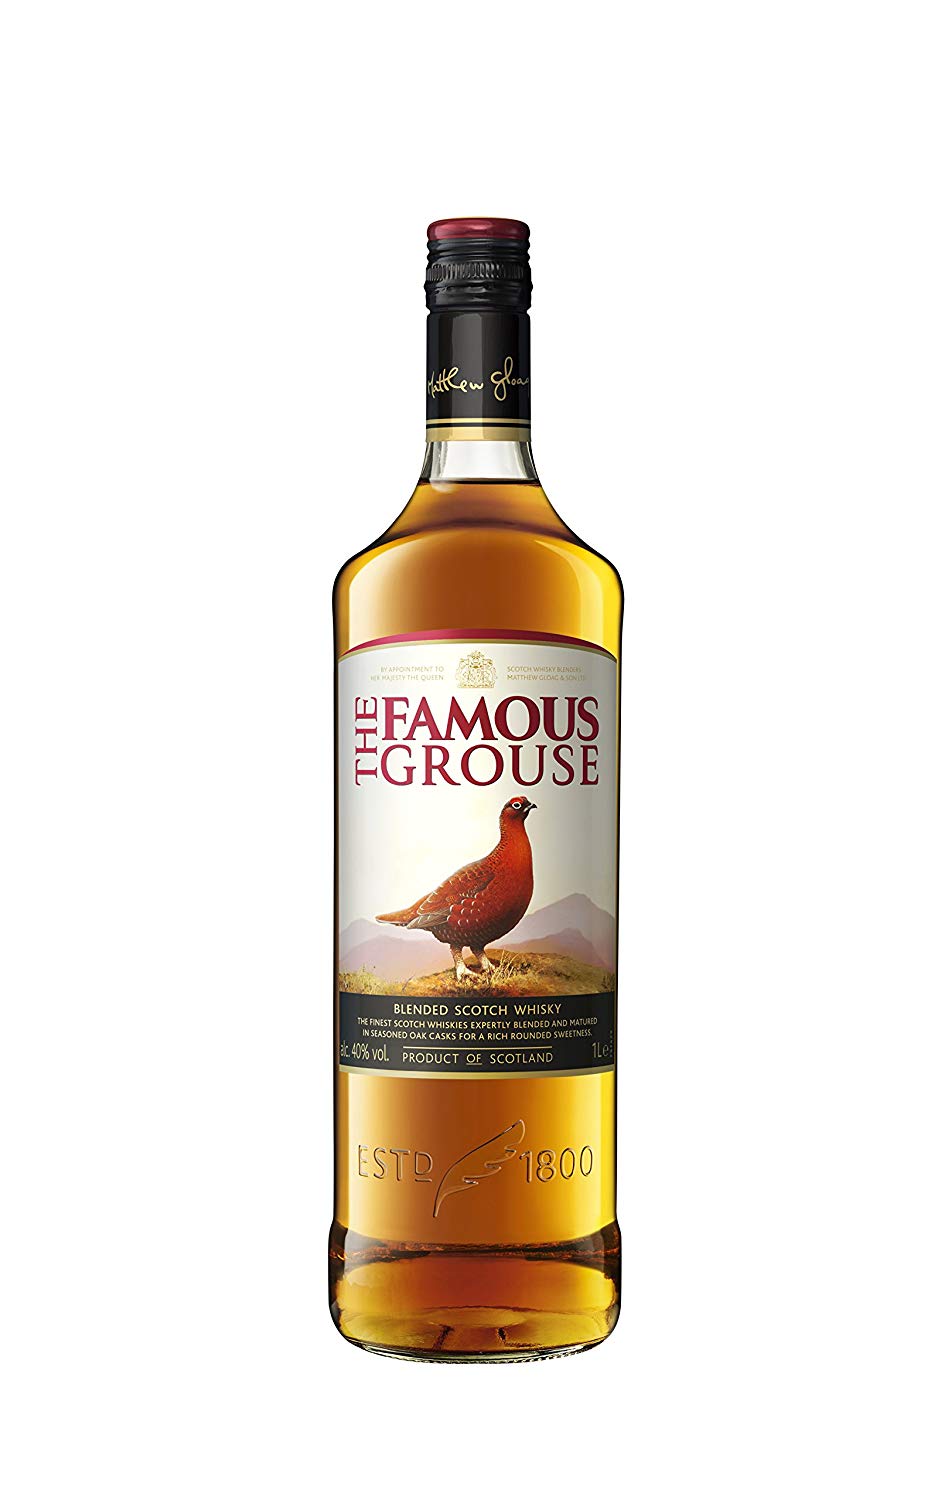 Whisky Escocés The Famous Grouse de 1L solo 12,7€